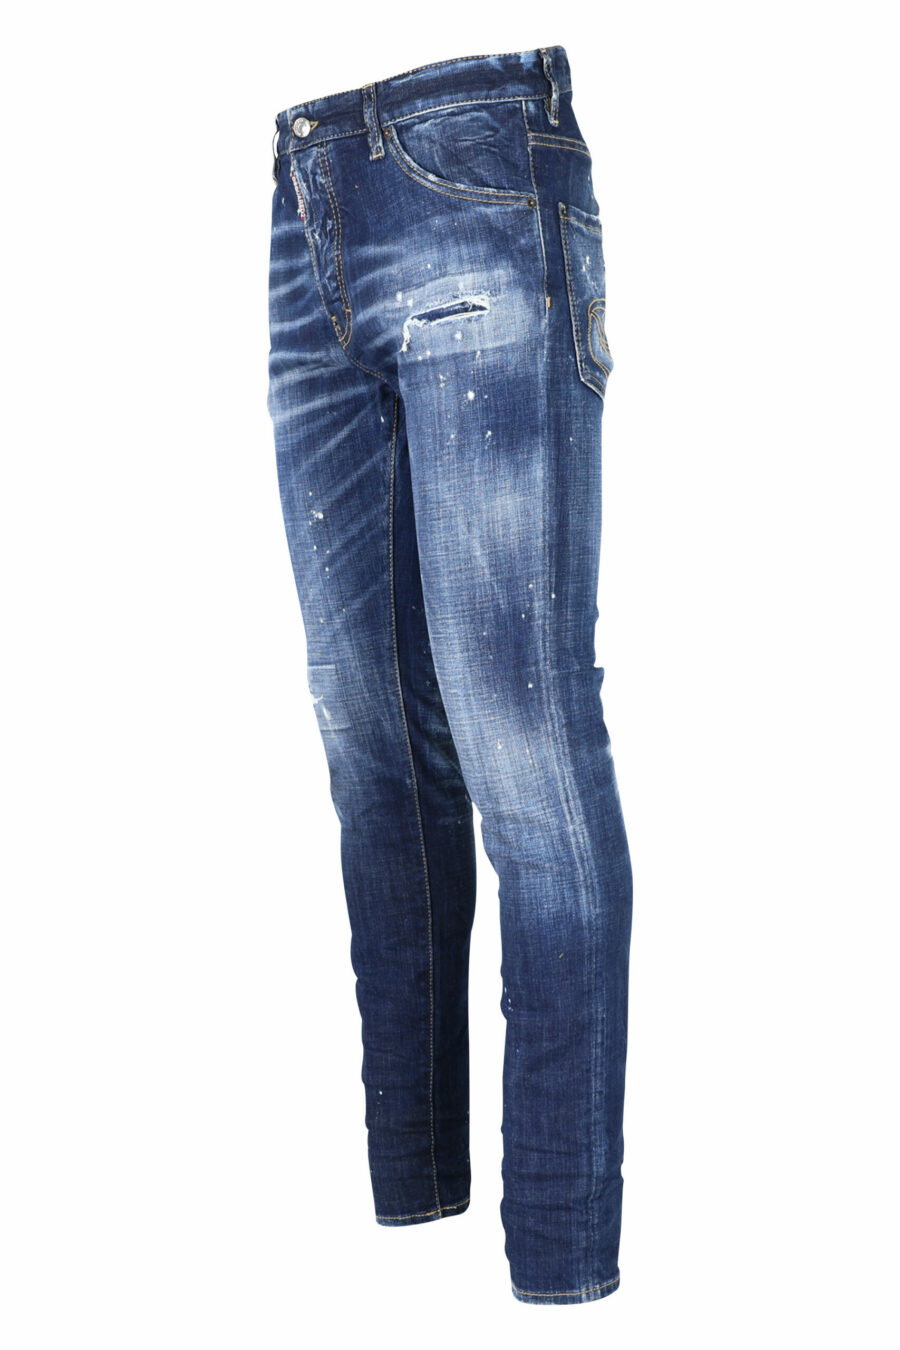 Calças de ganga azuis "cool guy jean" com pintura e desfiadas - 8054148101688 1 à escala